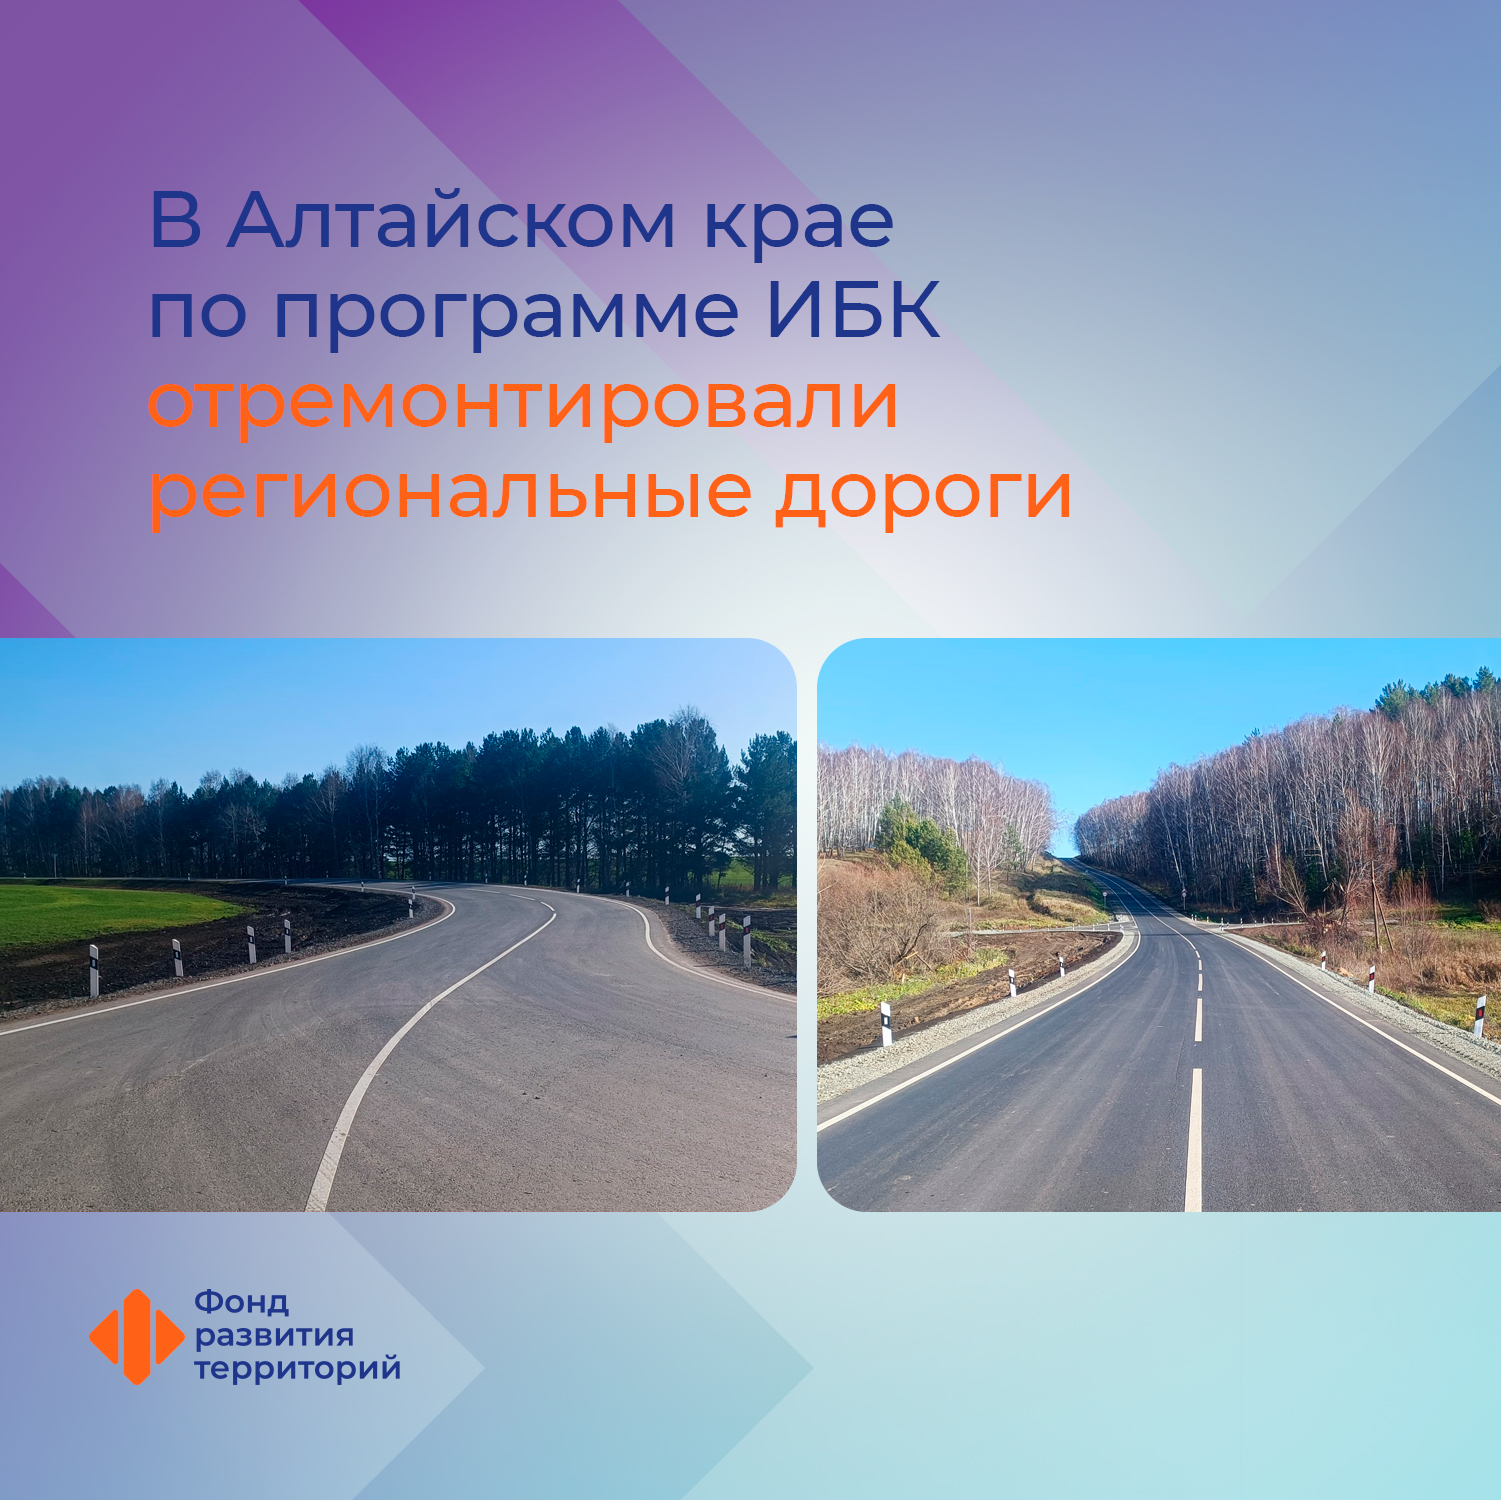 В Алтайском крае по программе ИБК отремонтировали региональные дороги